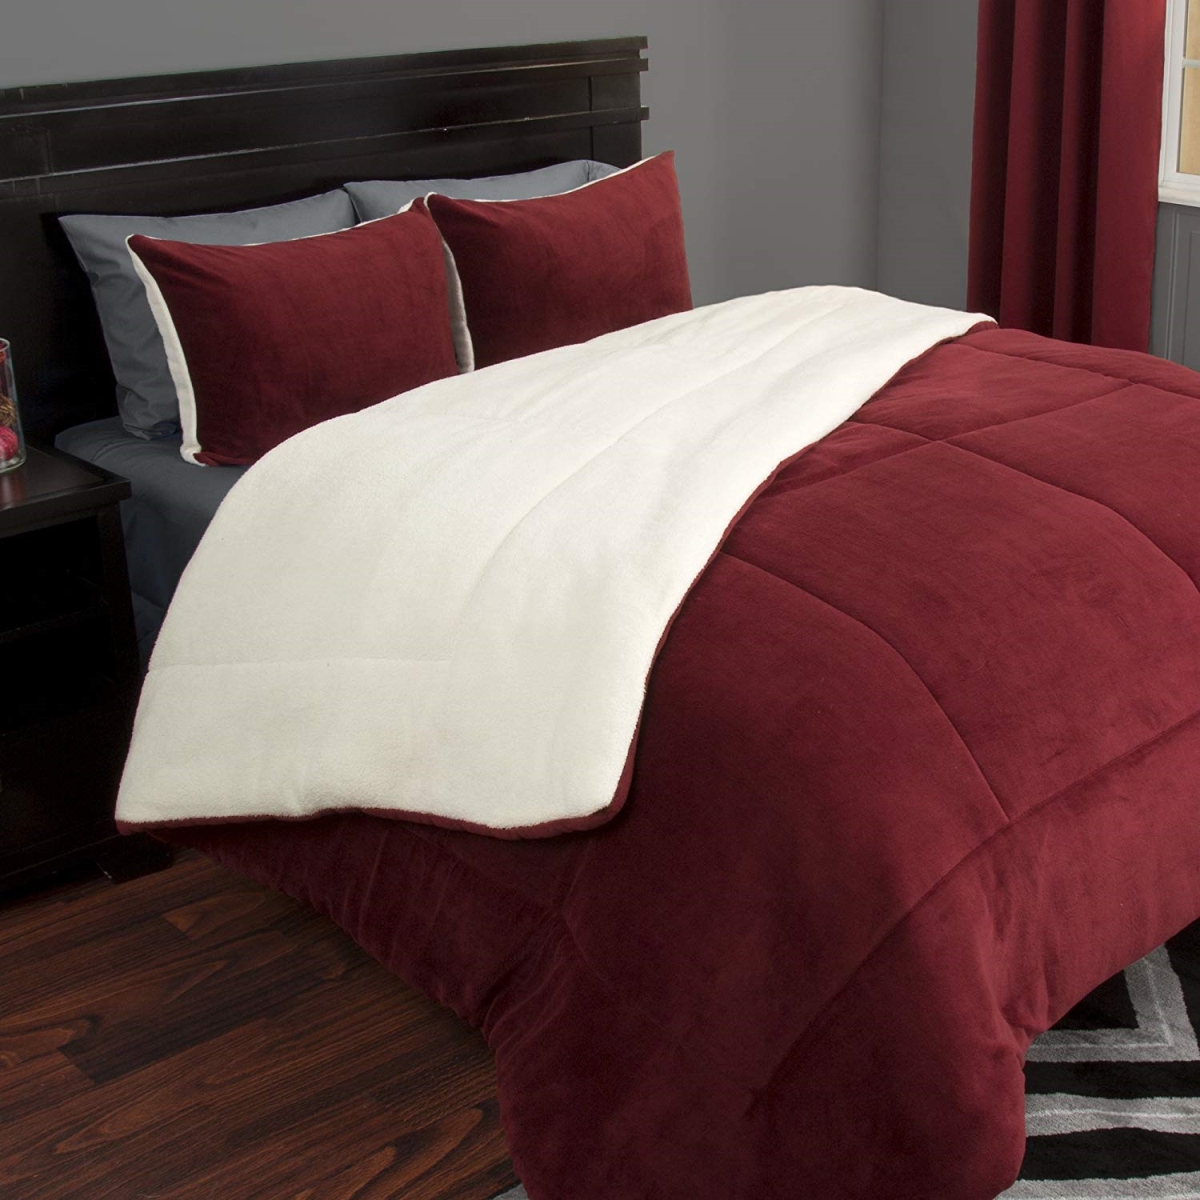 66a-27377 3 Piece Sherpa & Fleece Comforter Set, Full & Queen Size - Burgundy